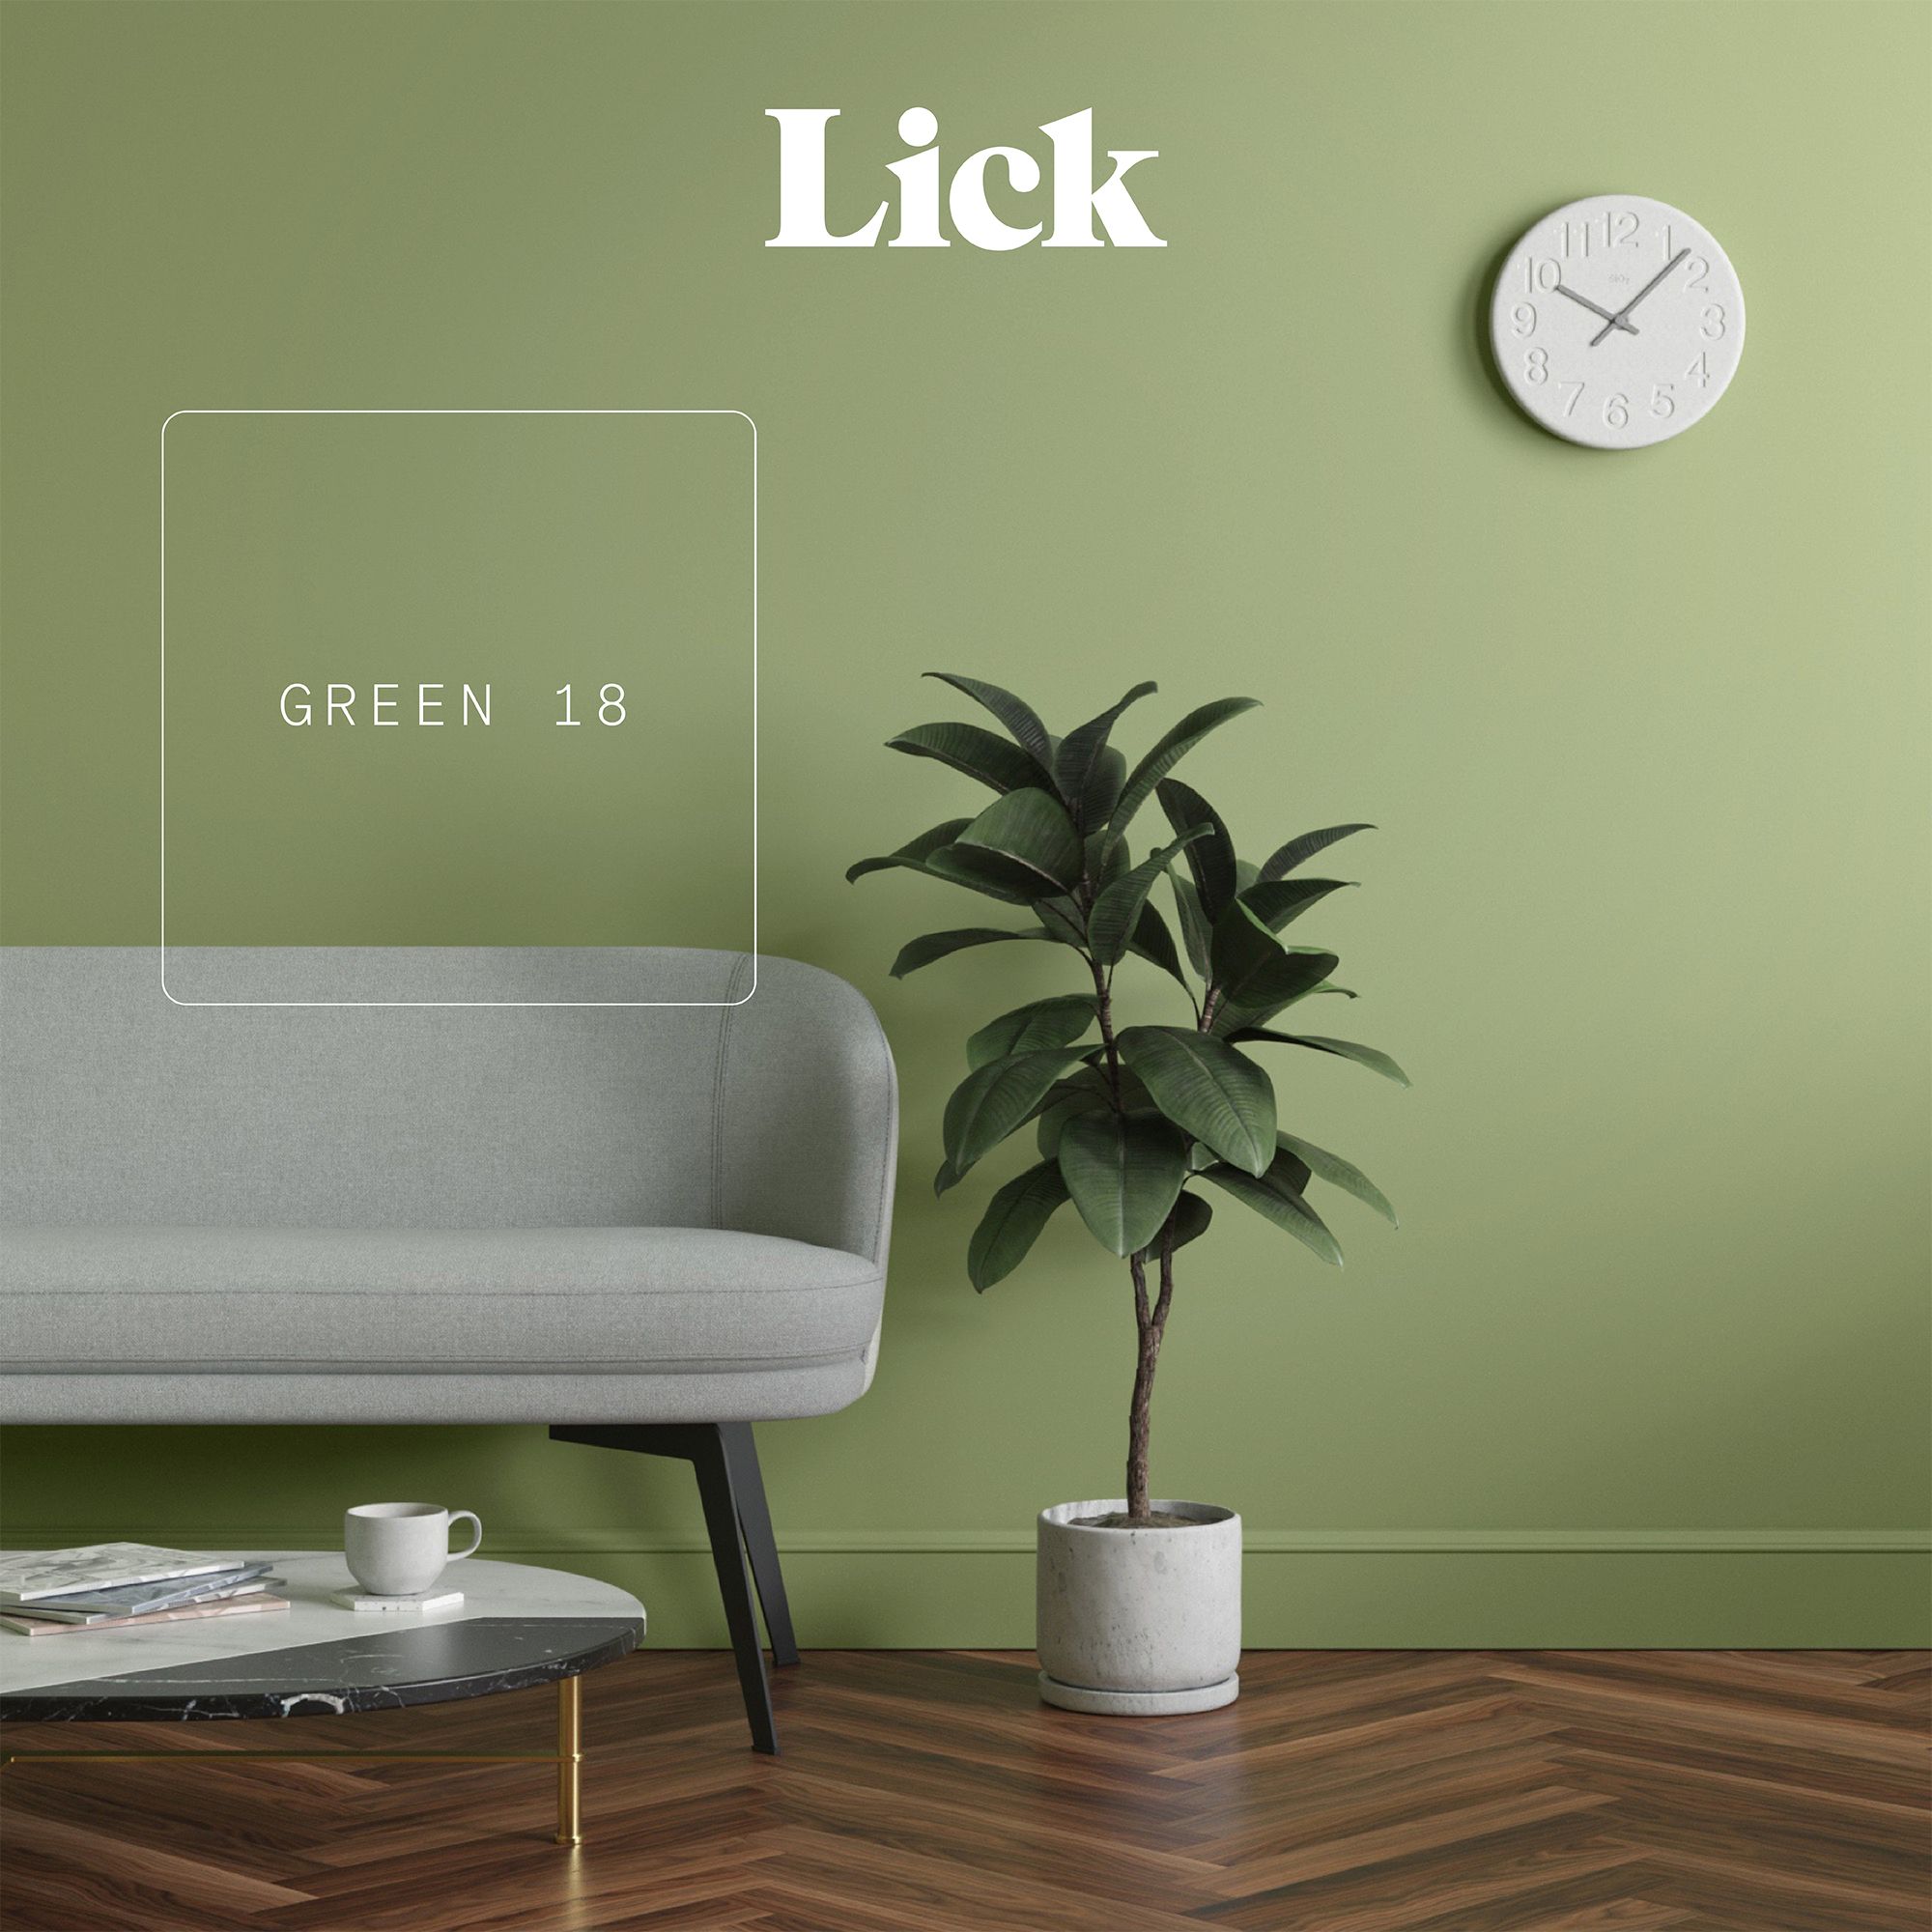 Lick Green 18 Matt Emulsion paint, 2.5L